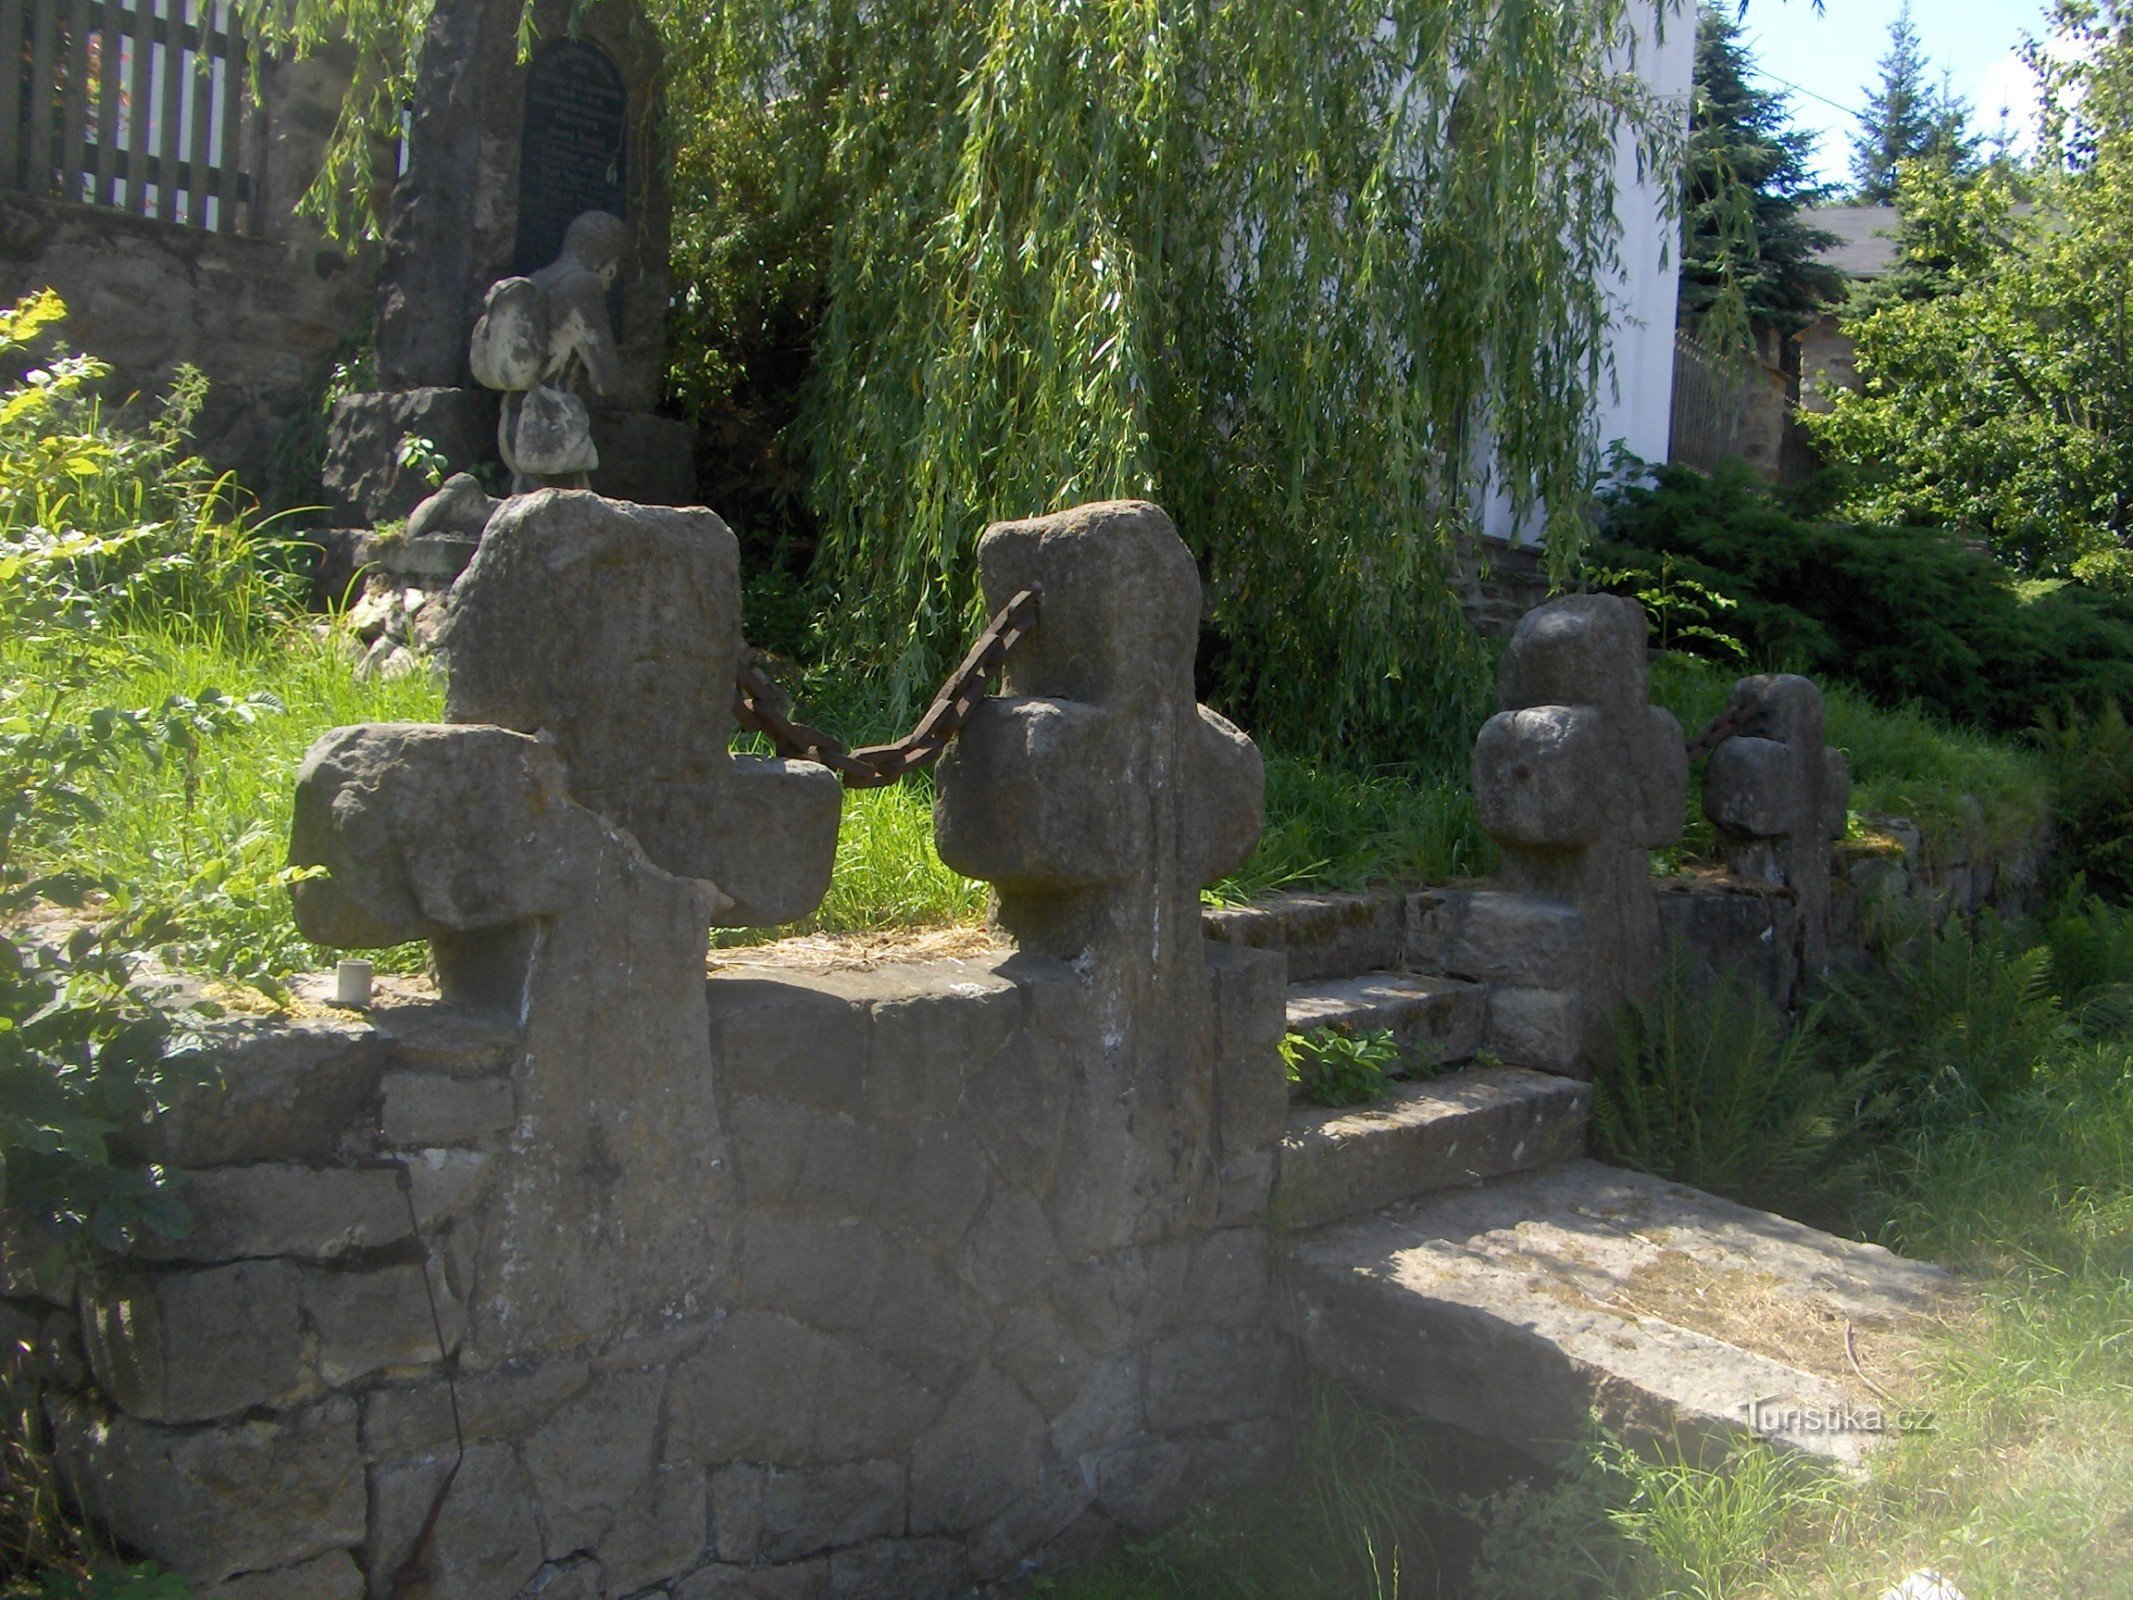 Những cây thánh giá đối chiếu của Knínice.